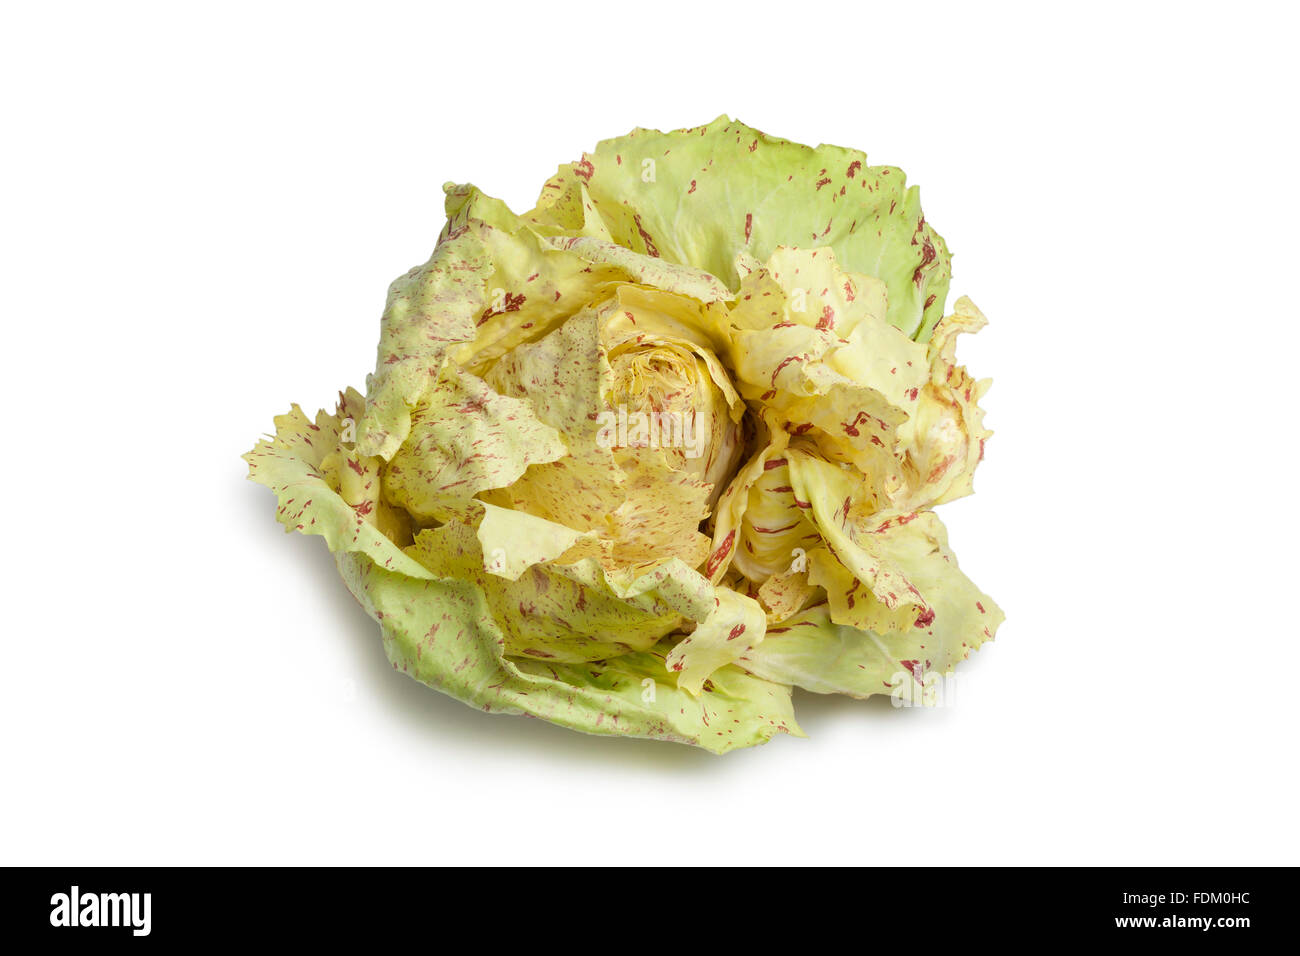 Radicchio CastelFranco lettuce on white background Stock Photo